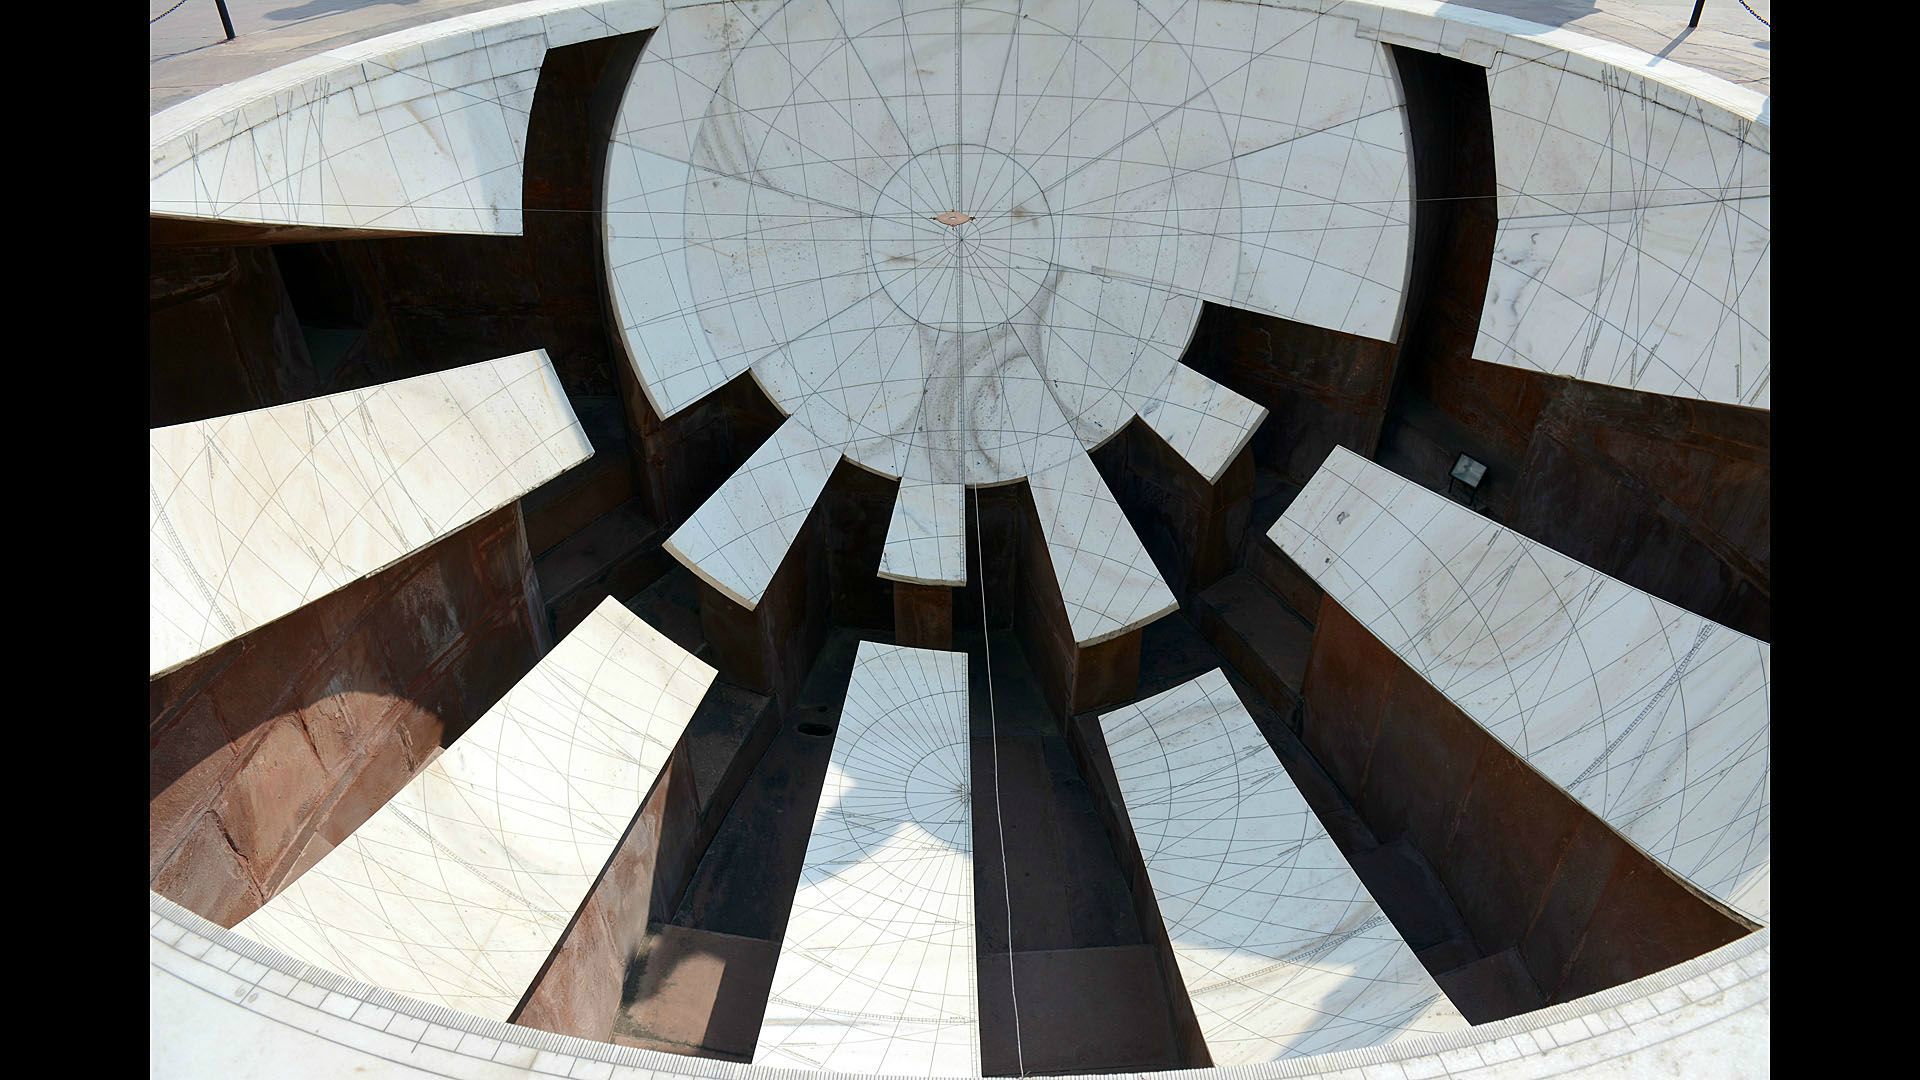 Jantar Mantar - największe i najlepiej zachowane obserwatorium astronomiczne z instrumentami z kamienia